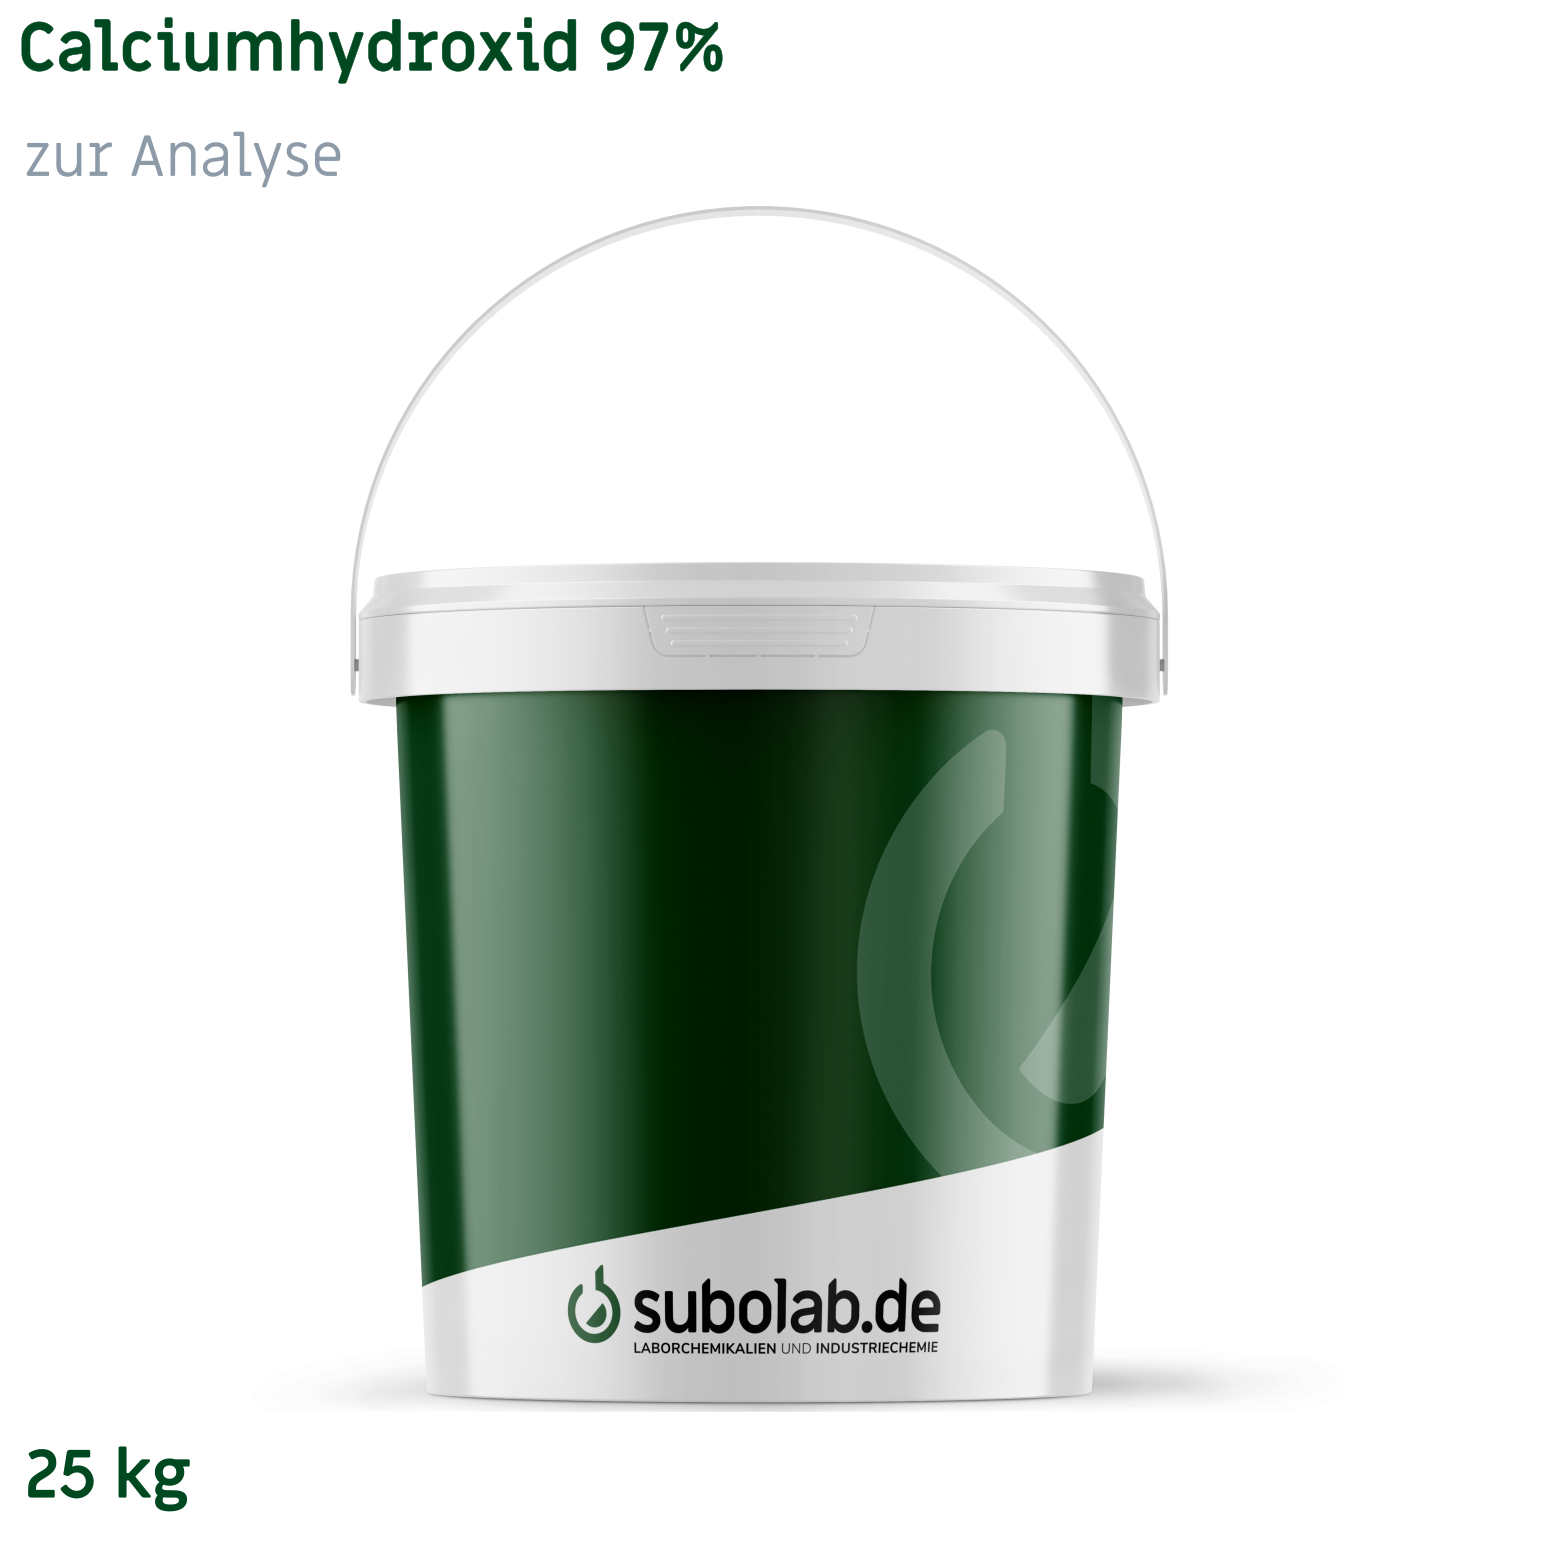 Bild von Calciumhydroxid 97% zur Analyse (25 kg)